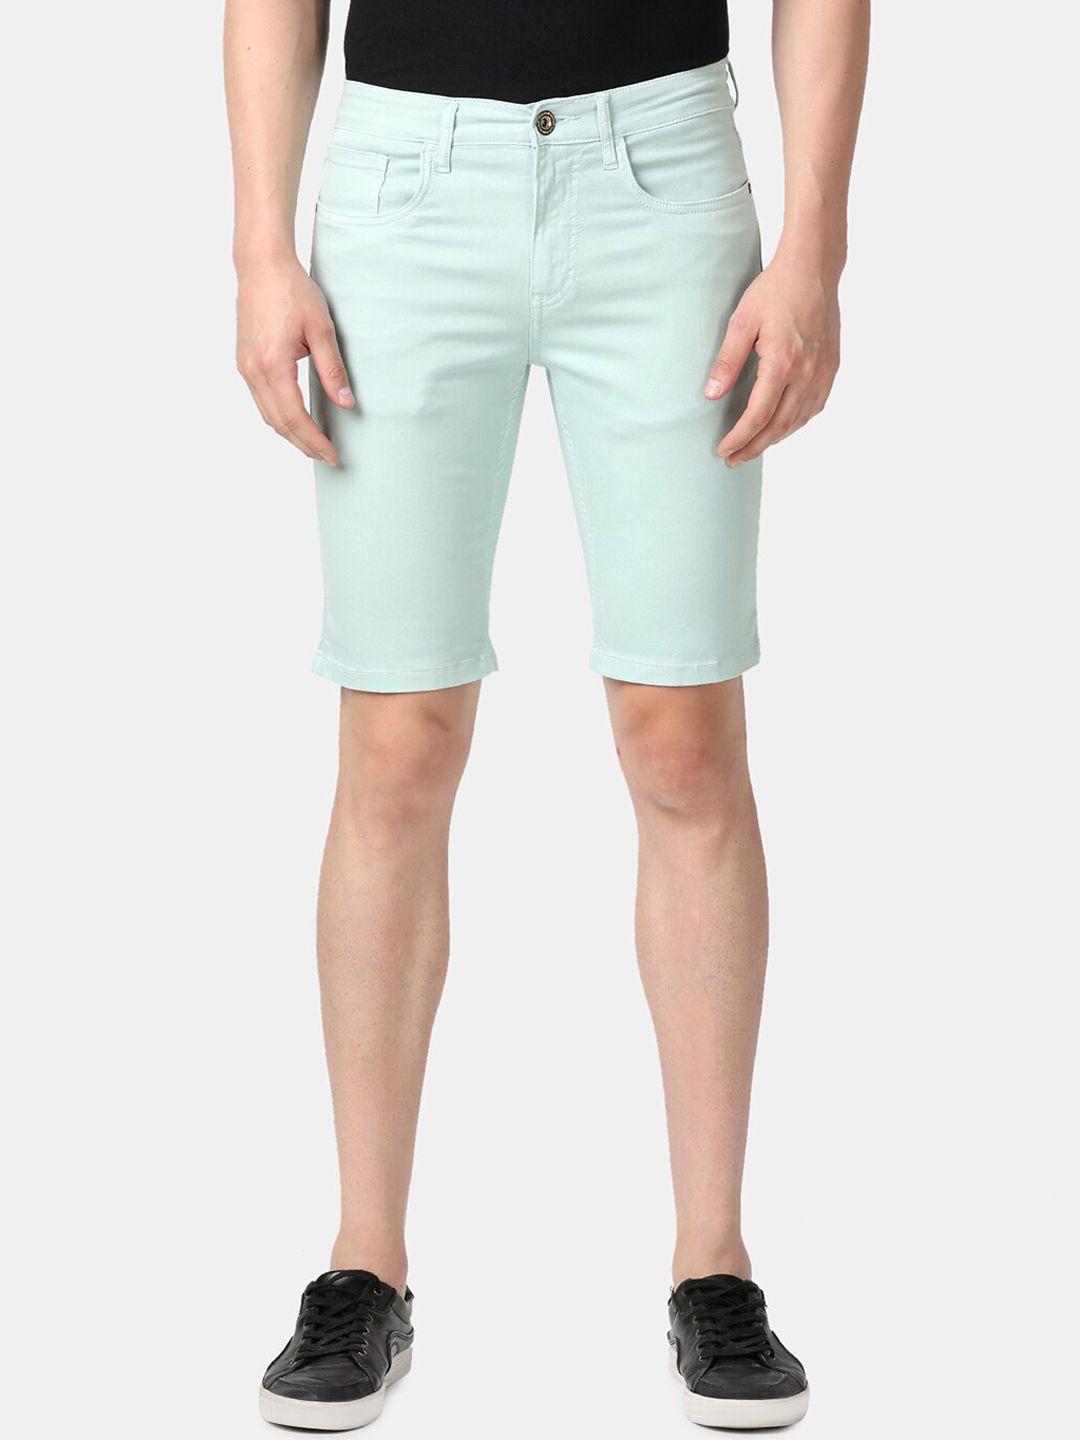 llak jeans men sea green solid slim fit denim shorts